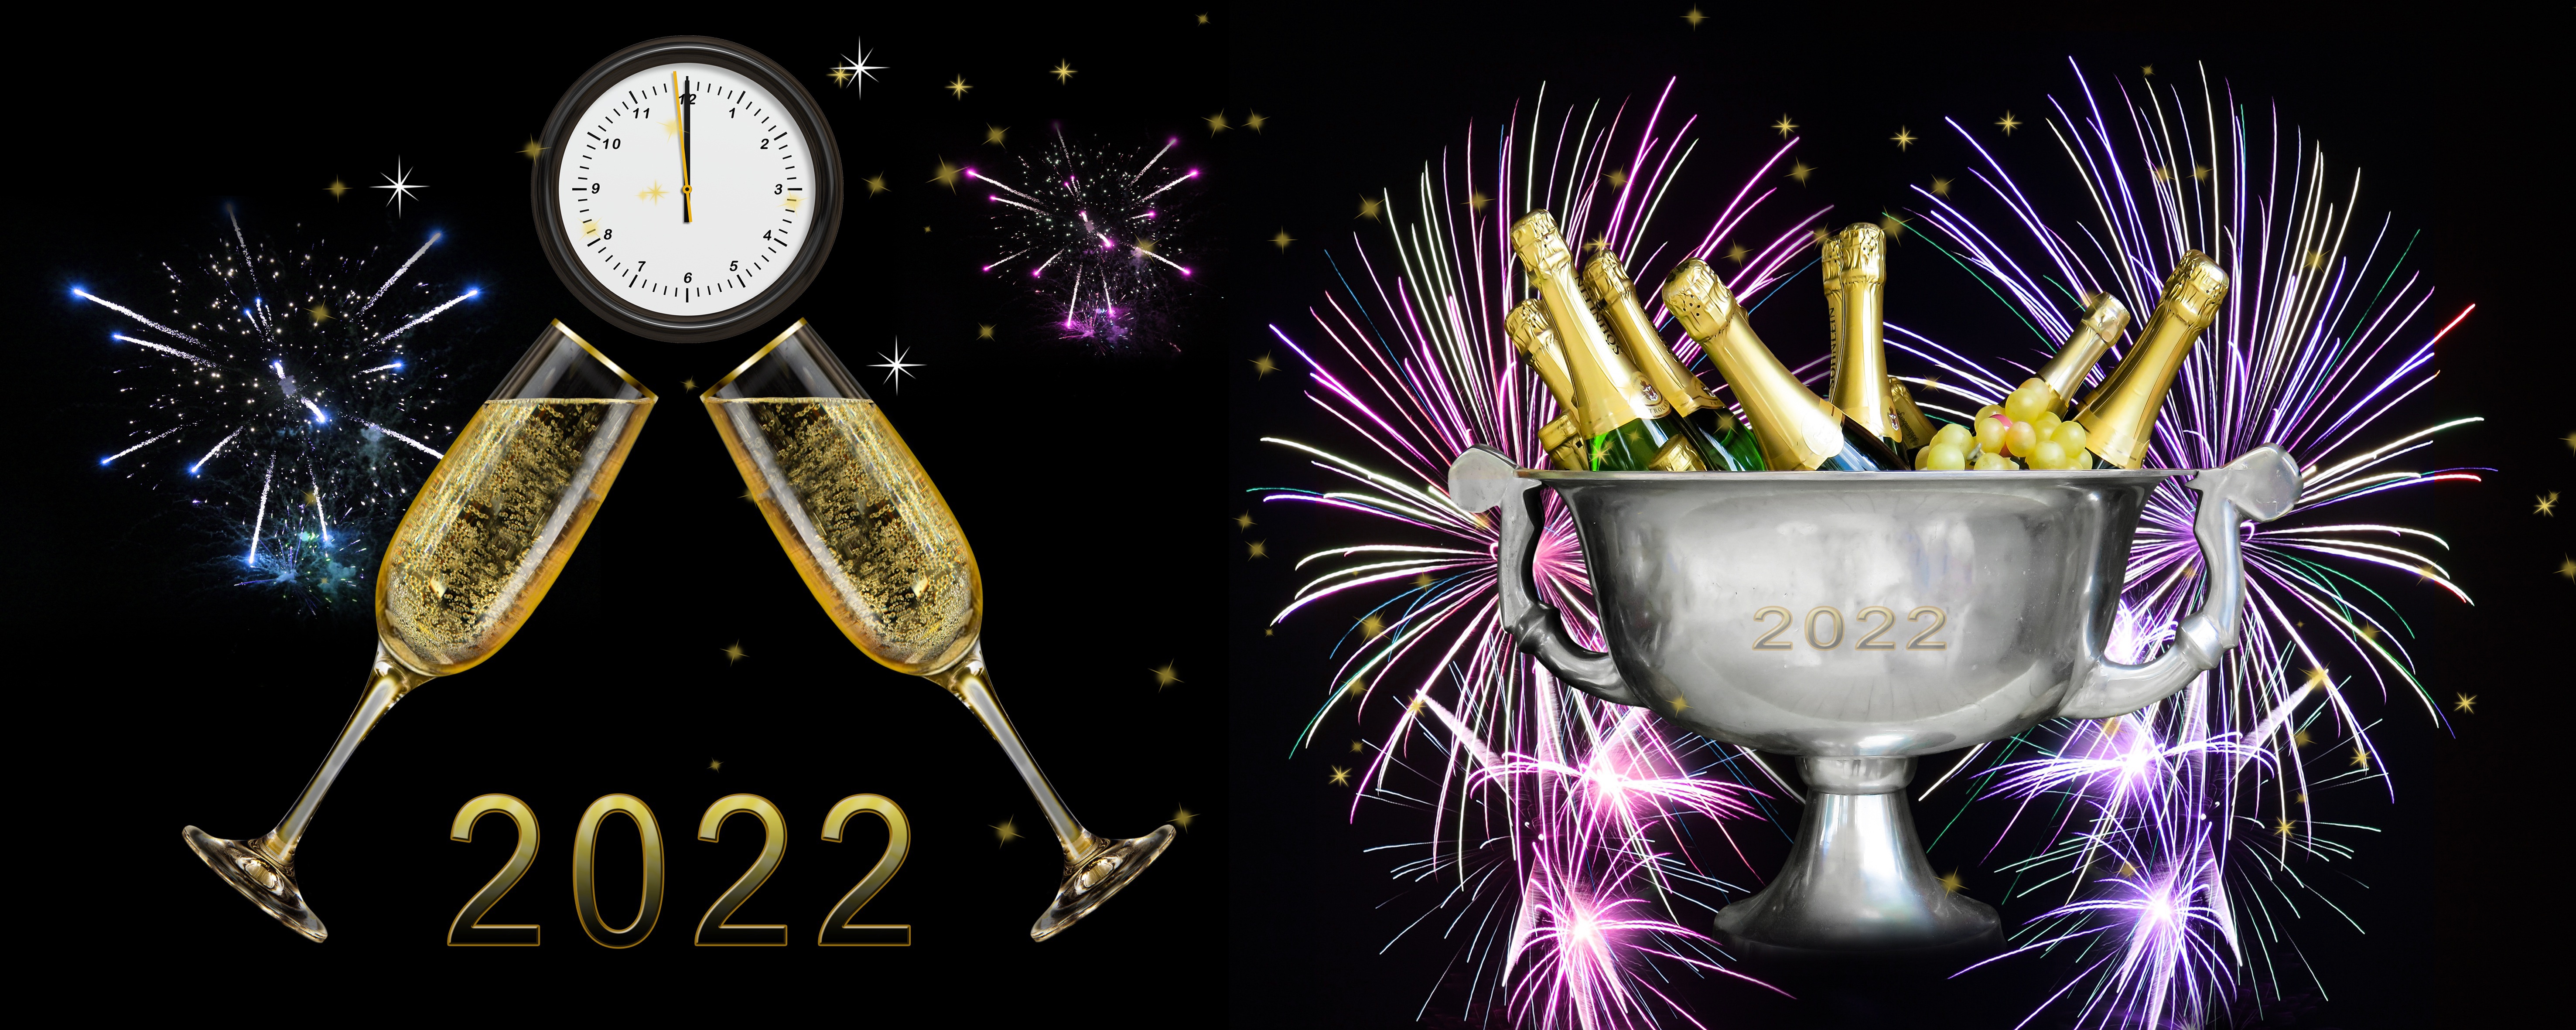 Шампанского 2022. С новым годом 2022 шампанское. Шампанское 2022. Новогодний черный фон с шампанским. Бутылка с фейерверком.